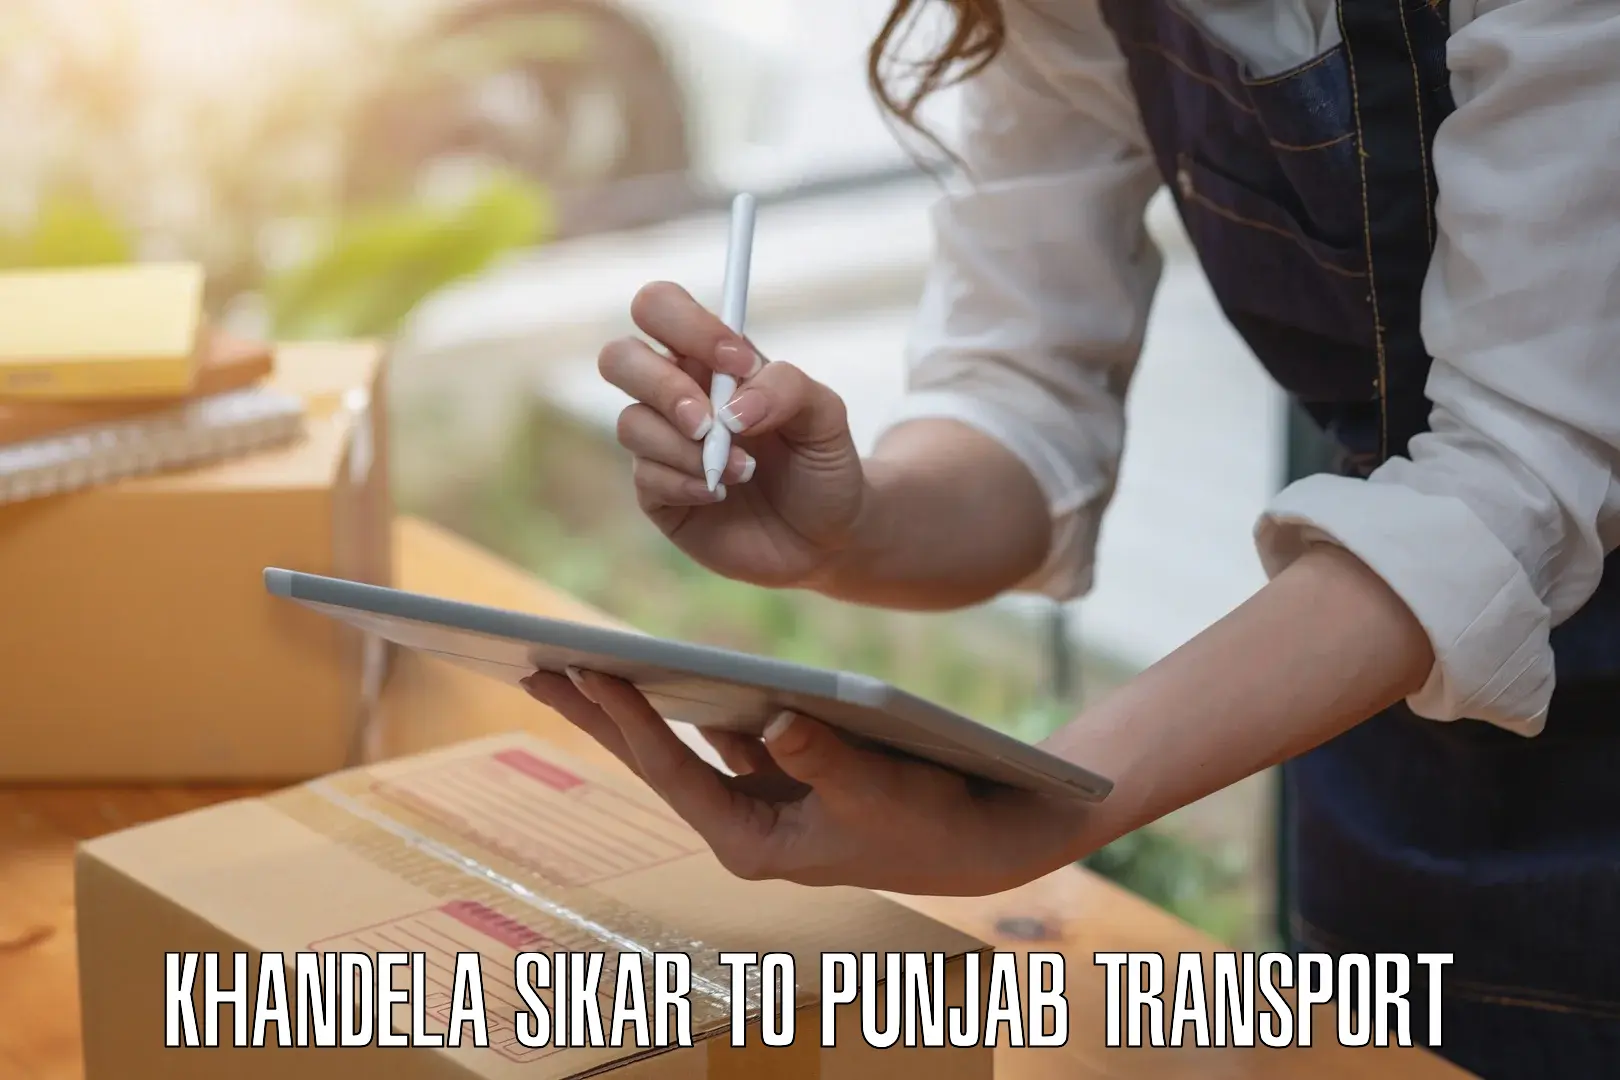 Express transport services Khandela Sikar to Central University of Punjab Bathinda